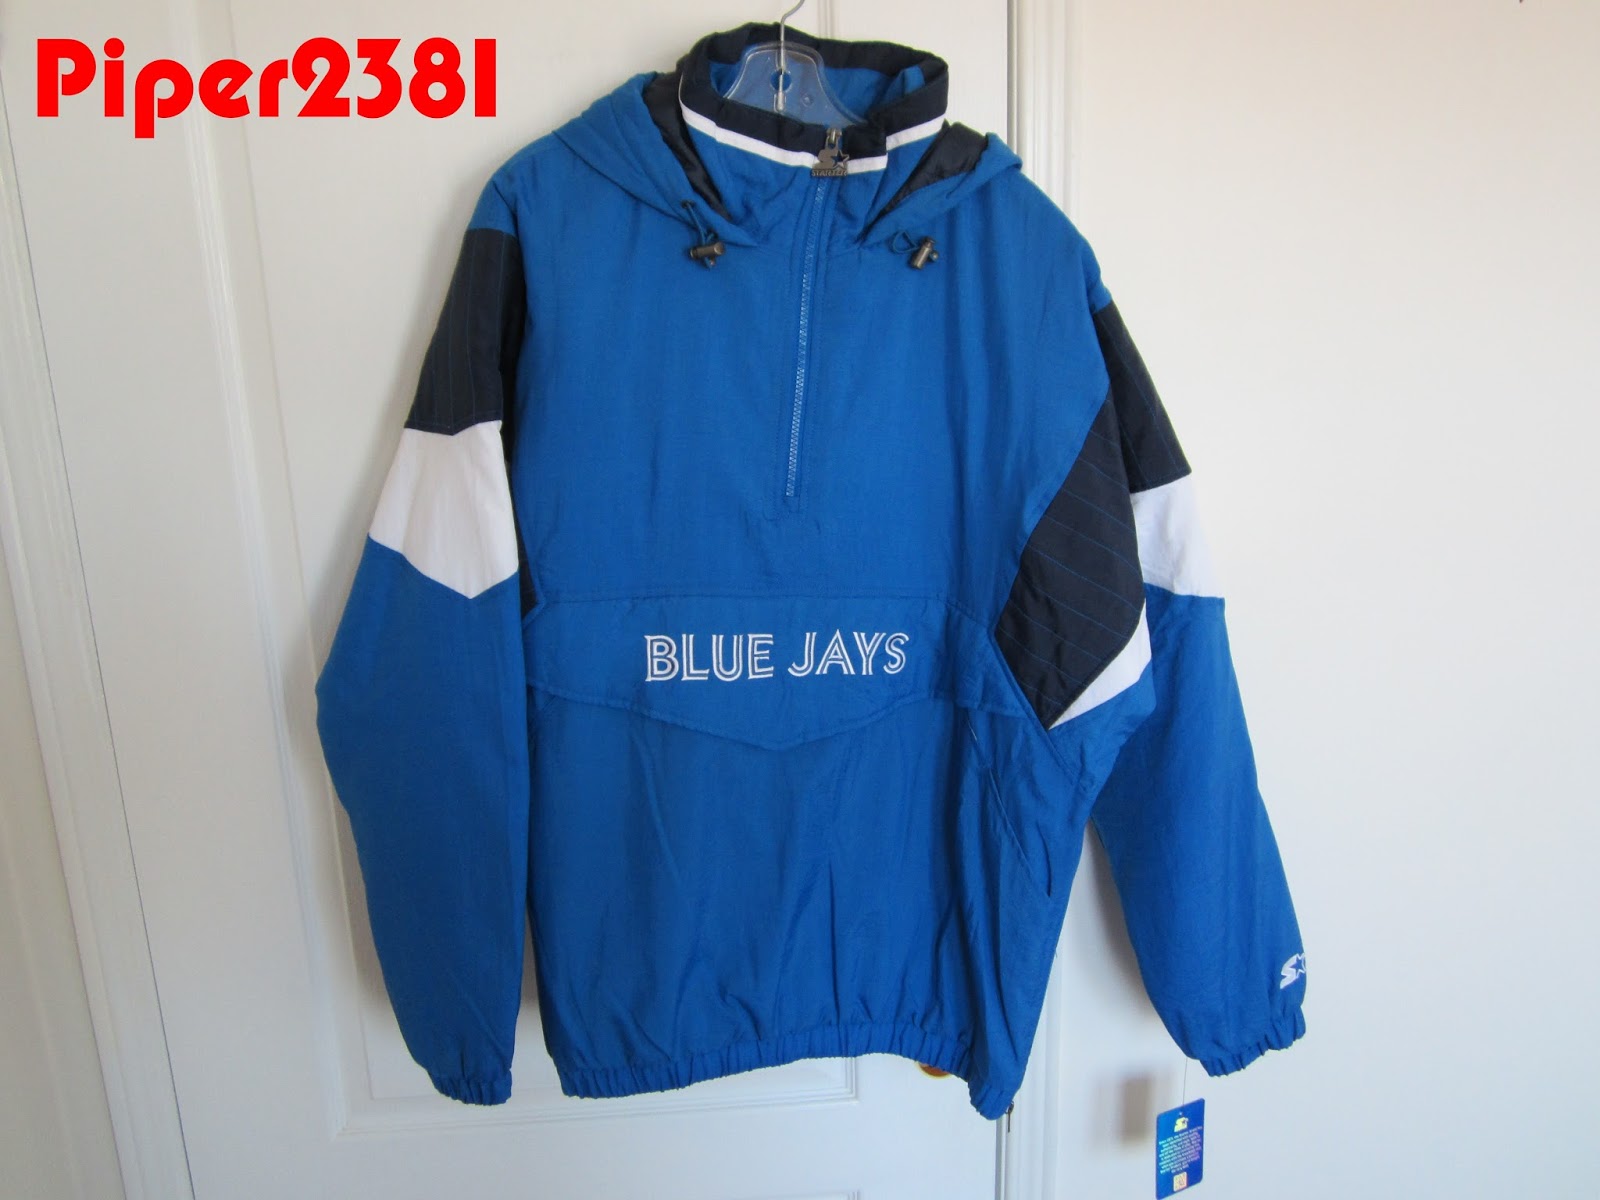 Piper2381: Blue Jays Replica Donaldson Jersey (SGA)